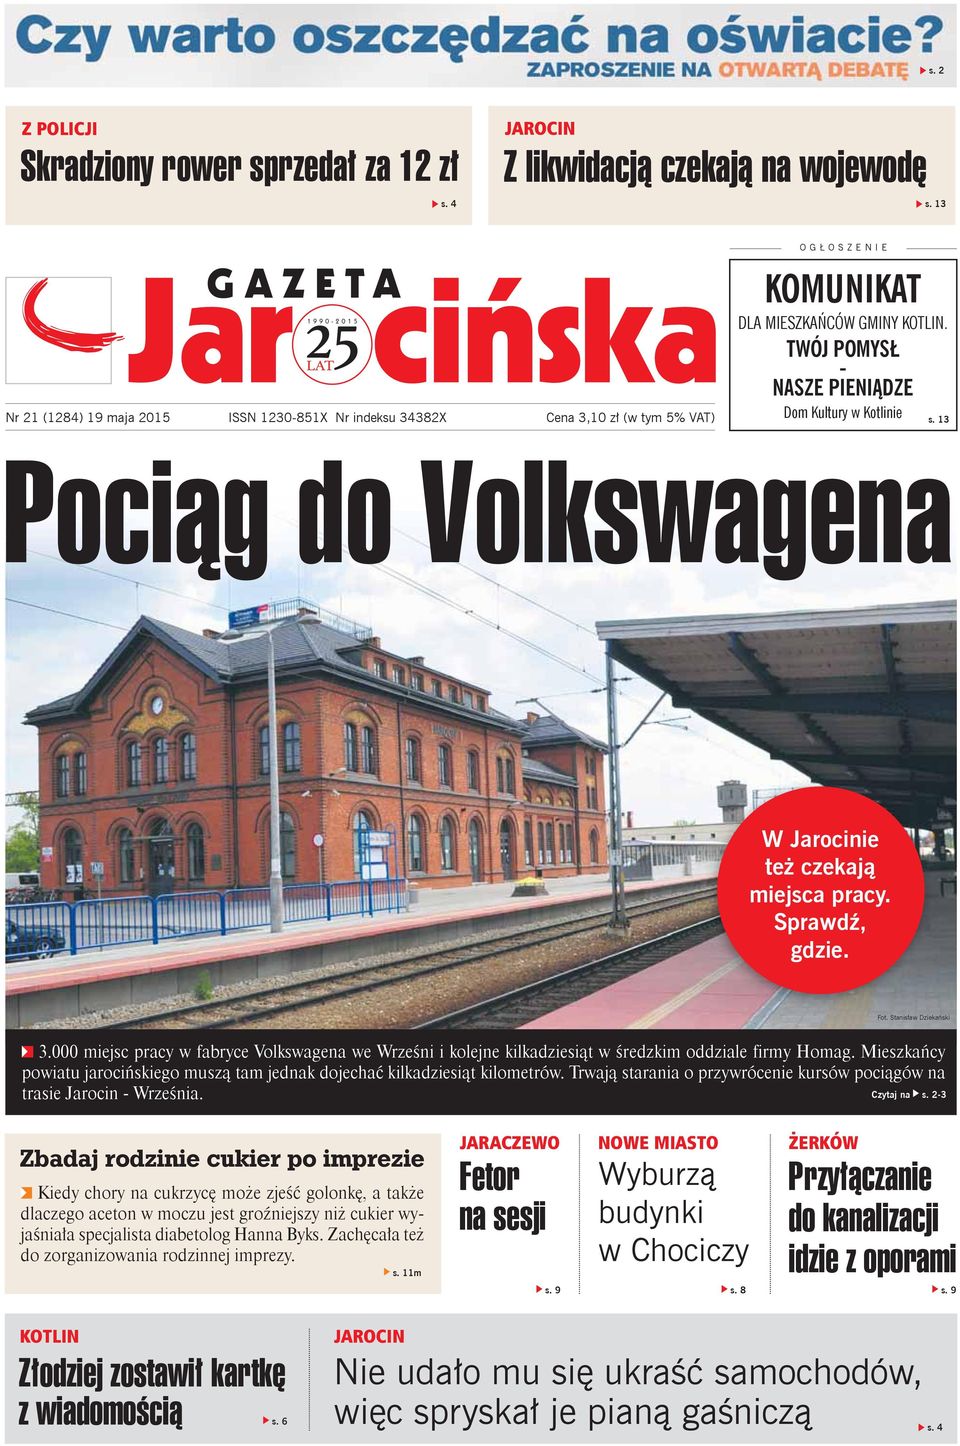 13 Pociąg do Volkswagena W Jarocinie też czekają miejsca pracy. Sprawdź, gdzie. Fot. Stanisław Dziekański 3.